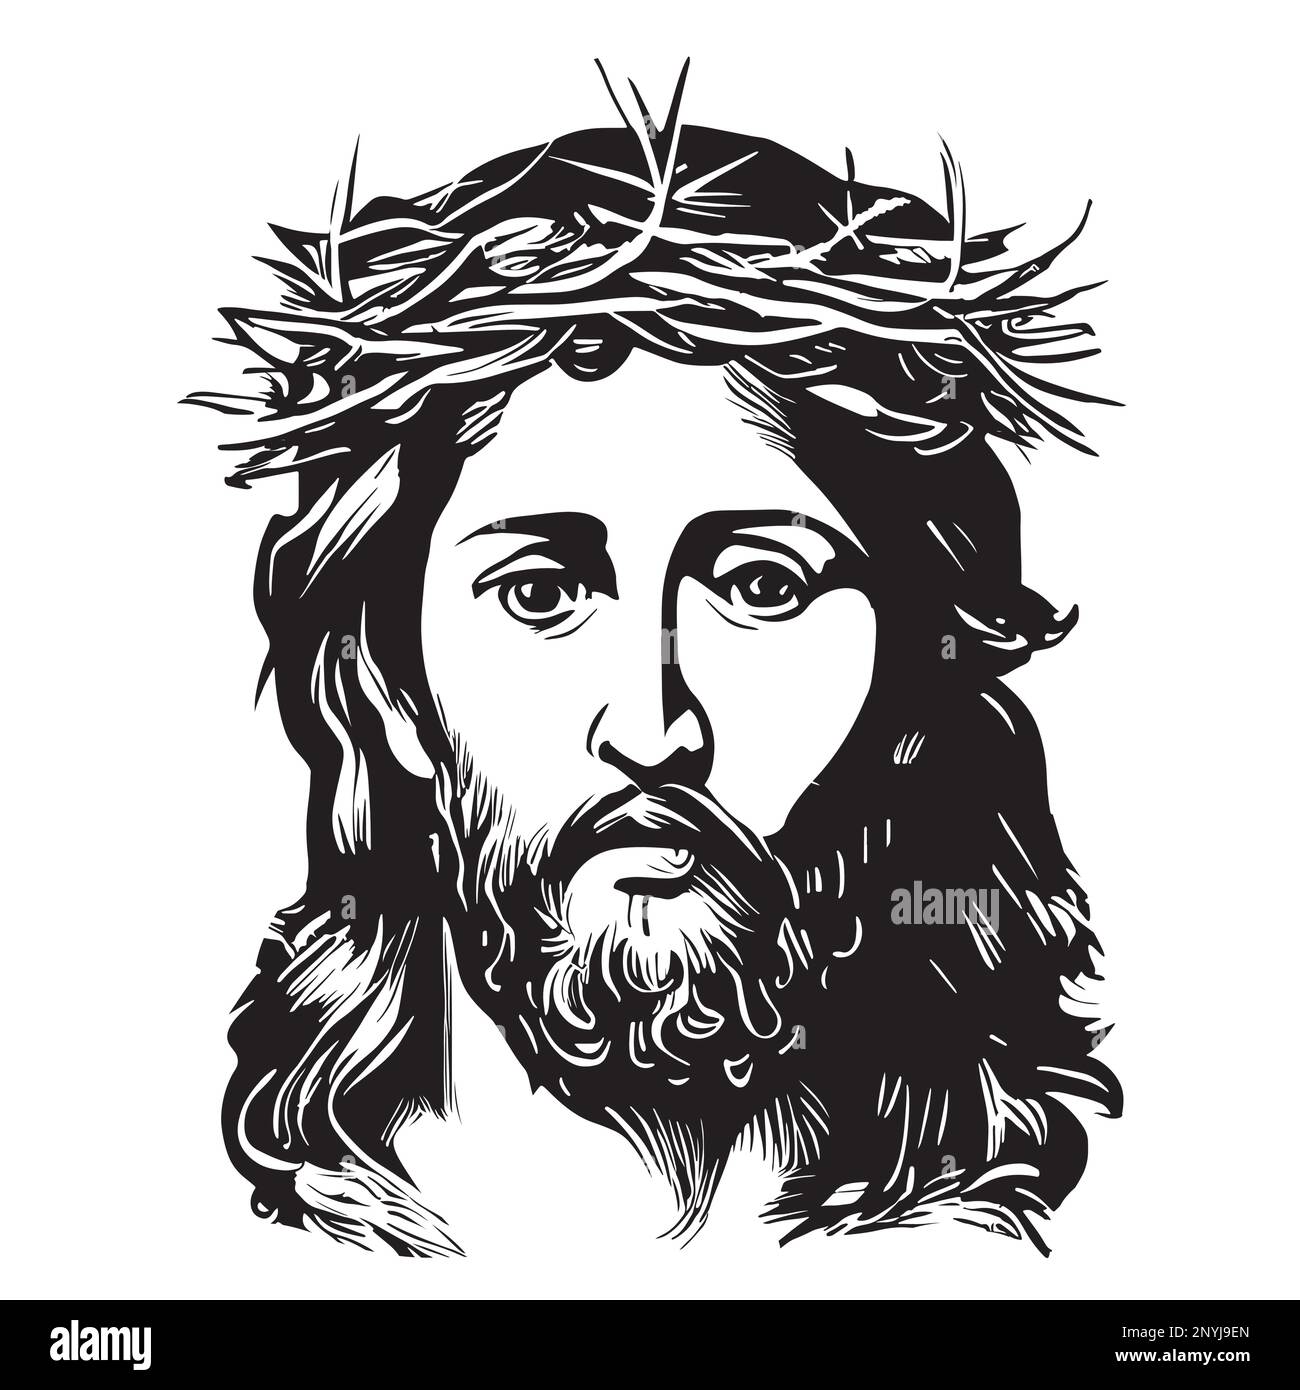 Ritratto di Gesù in una corona disegnata a mano in un disegno stile doodle Illustrazione Vettoriale